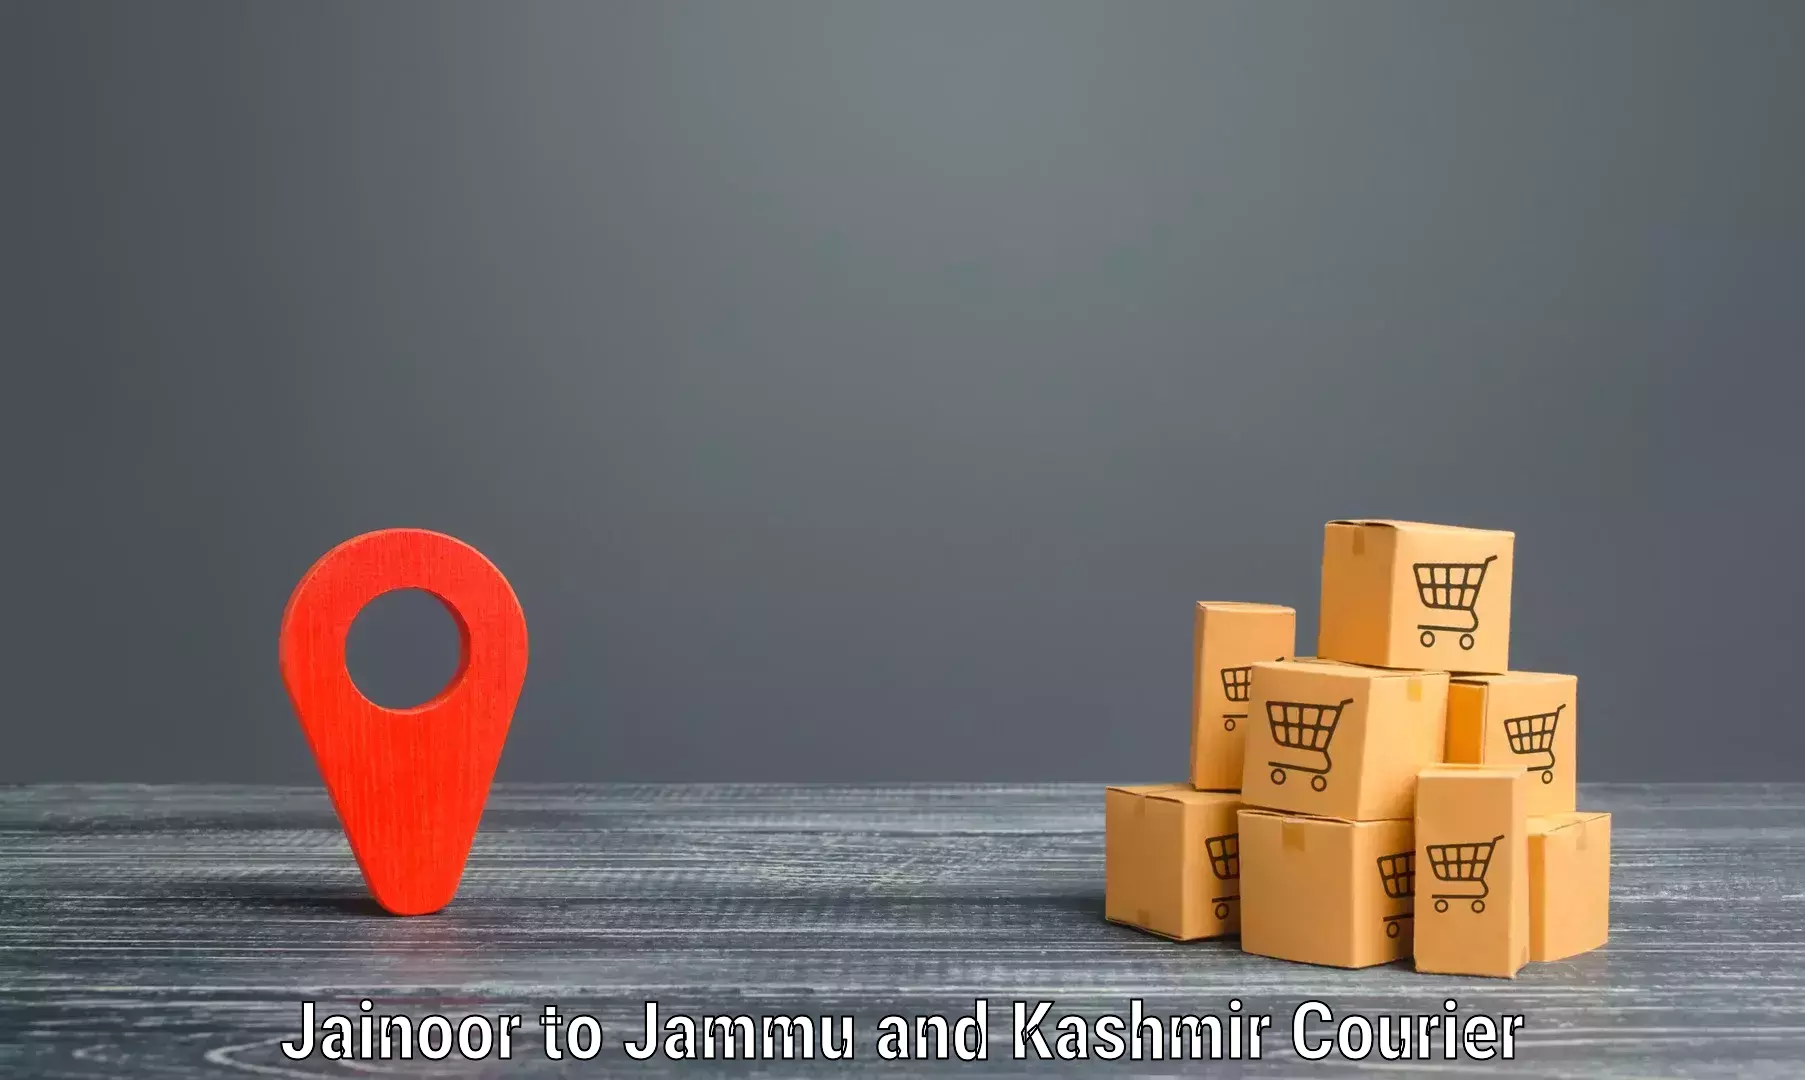 Bulk shipping discounts in Jainoor to Srinagar Kashmir